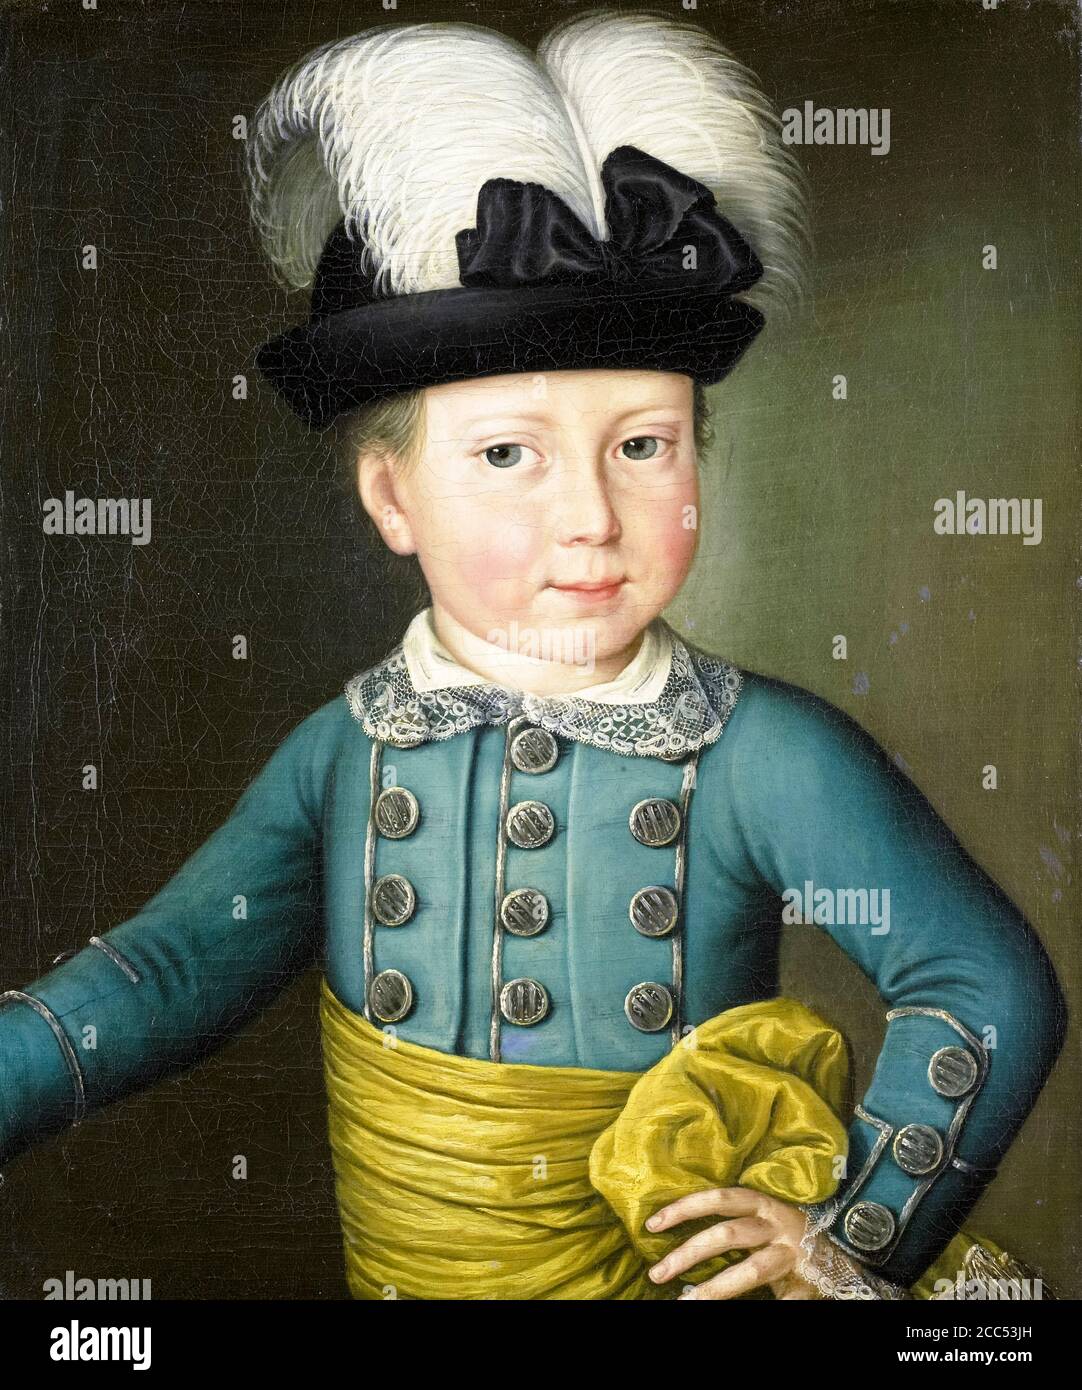 William Frederick (1772-1843), Prinz von Oranien-Nassau, später König Wilhelm I., als Kind, Portraitmalerei um 1775 Stockfoto